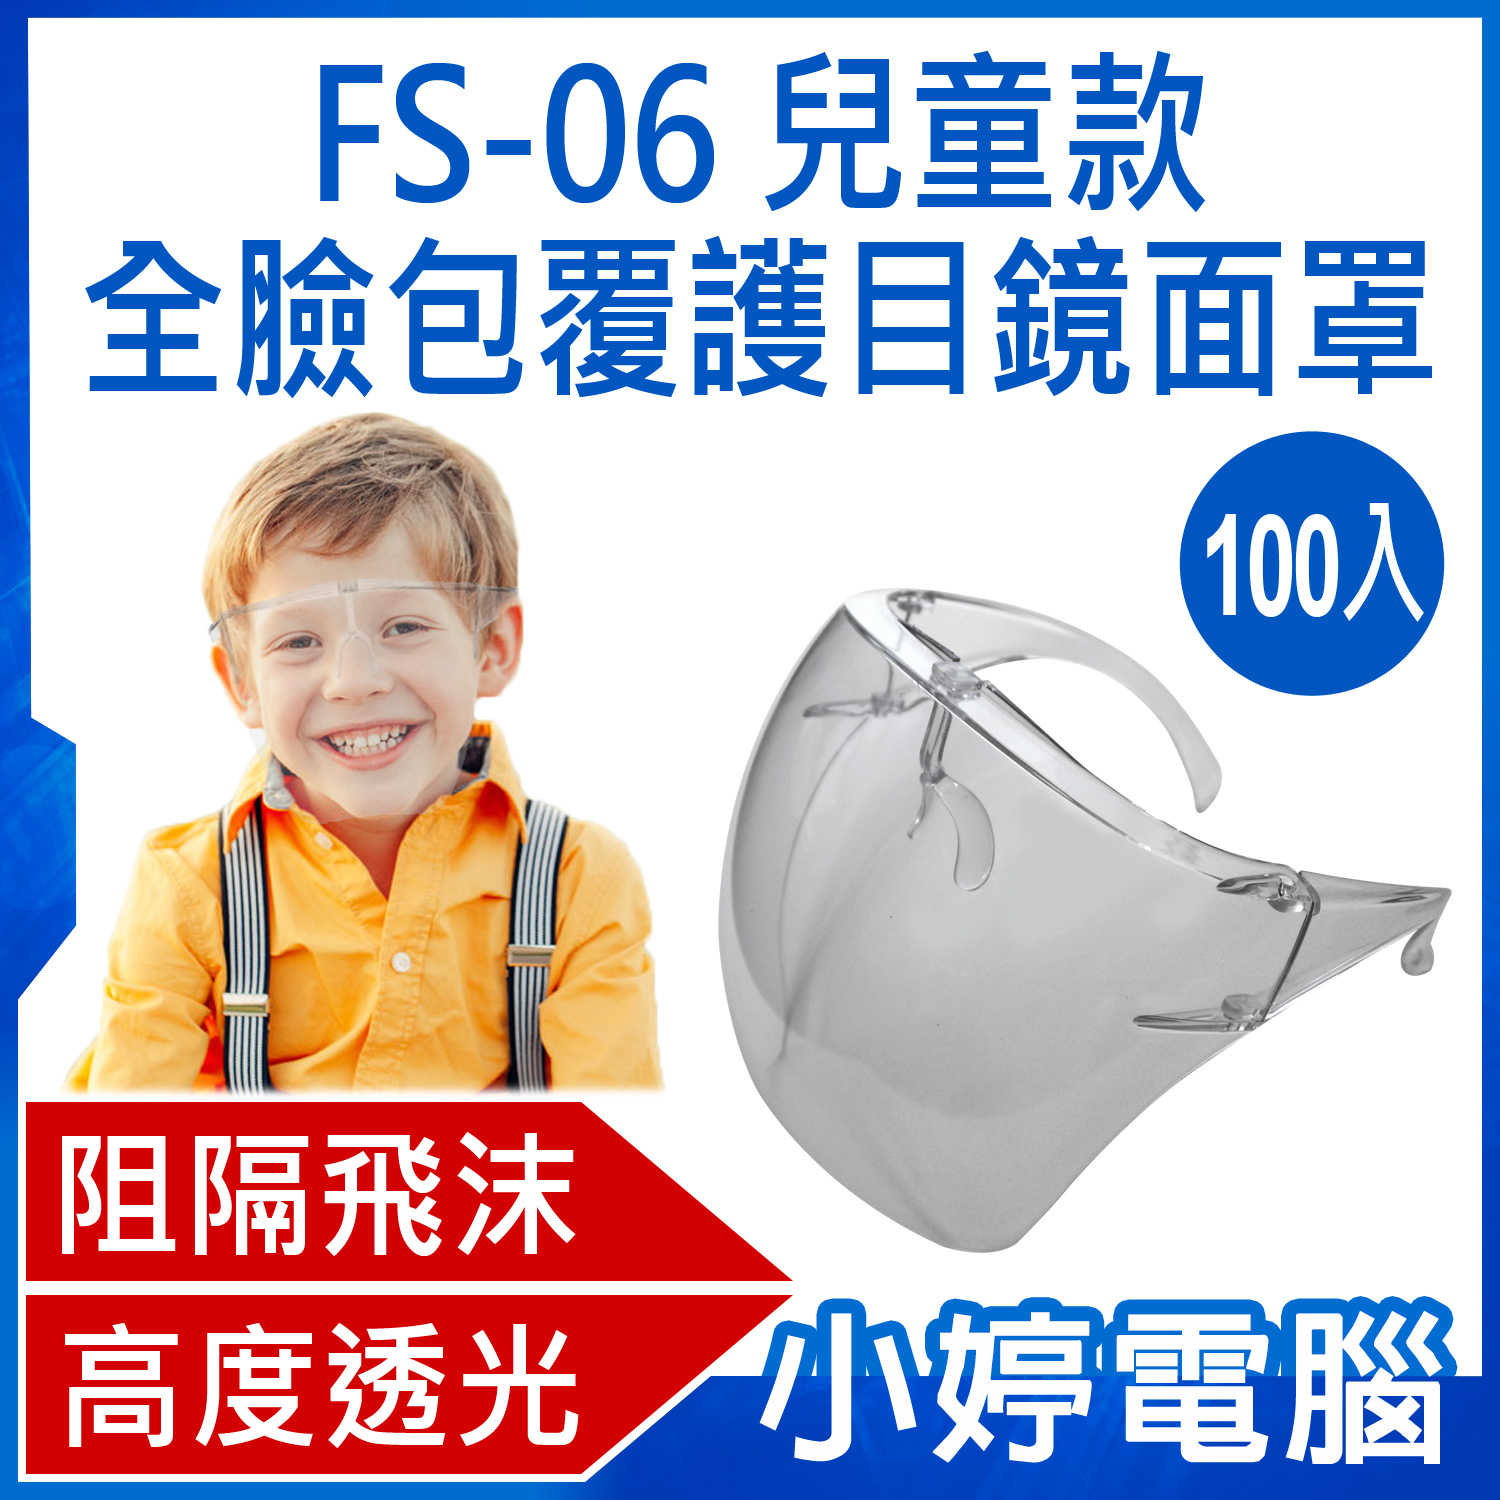 【小婷電腦】FS-06 全臉包覆護目鏡面罩 兒童款 防飛沫噴濺 兒童面罩 高透光 全臉防護 100入